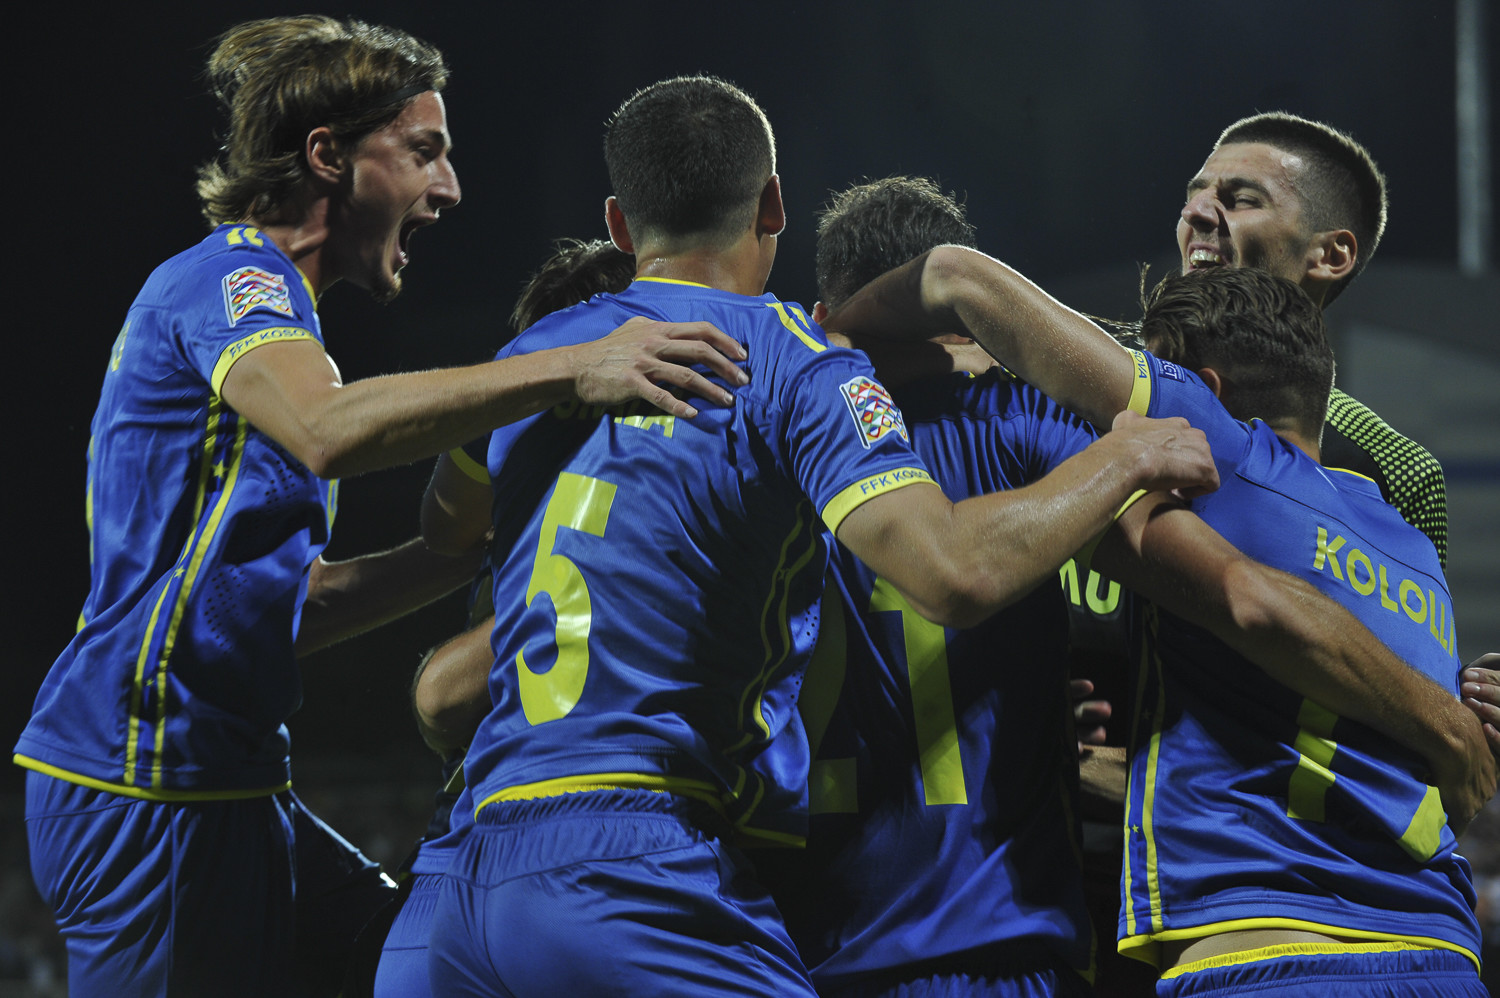 Kosowo z marzeniami o wielkim futbolu